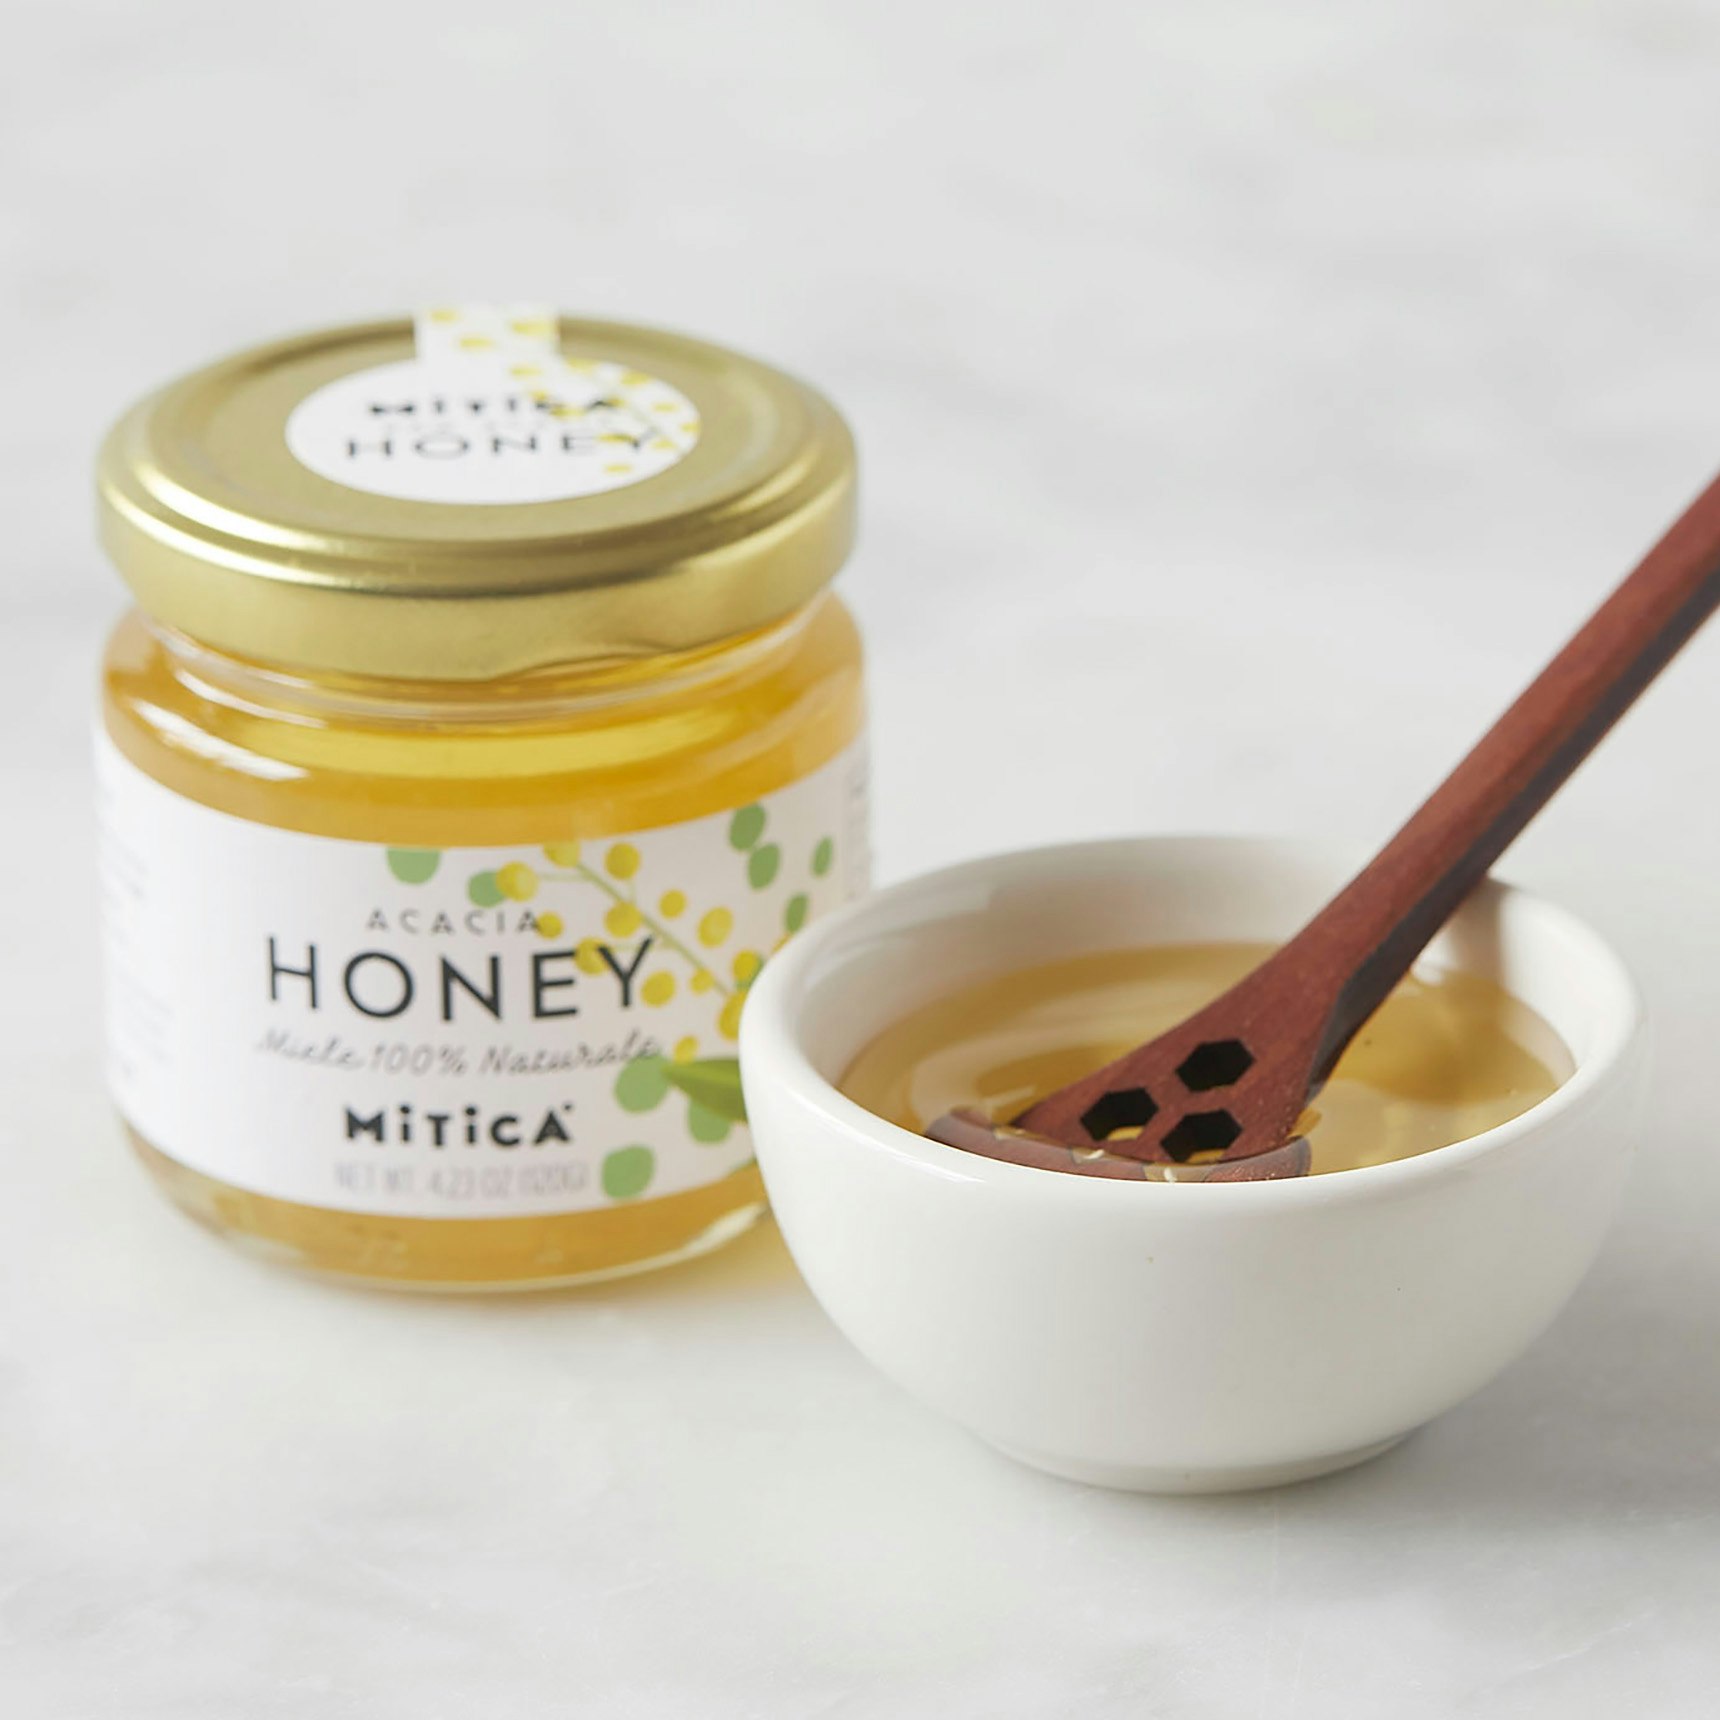 mitica acacia honey specialty foods